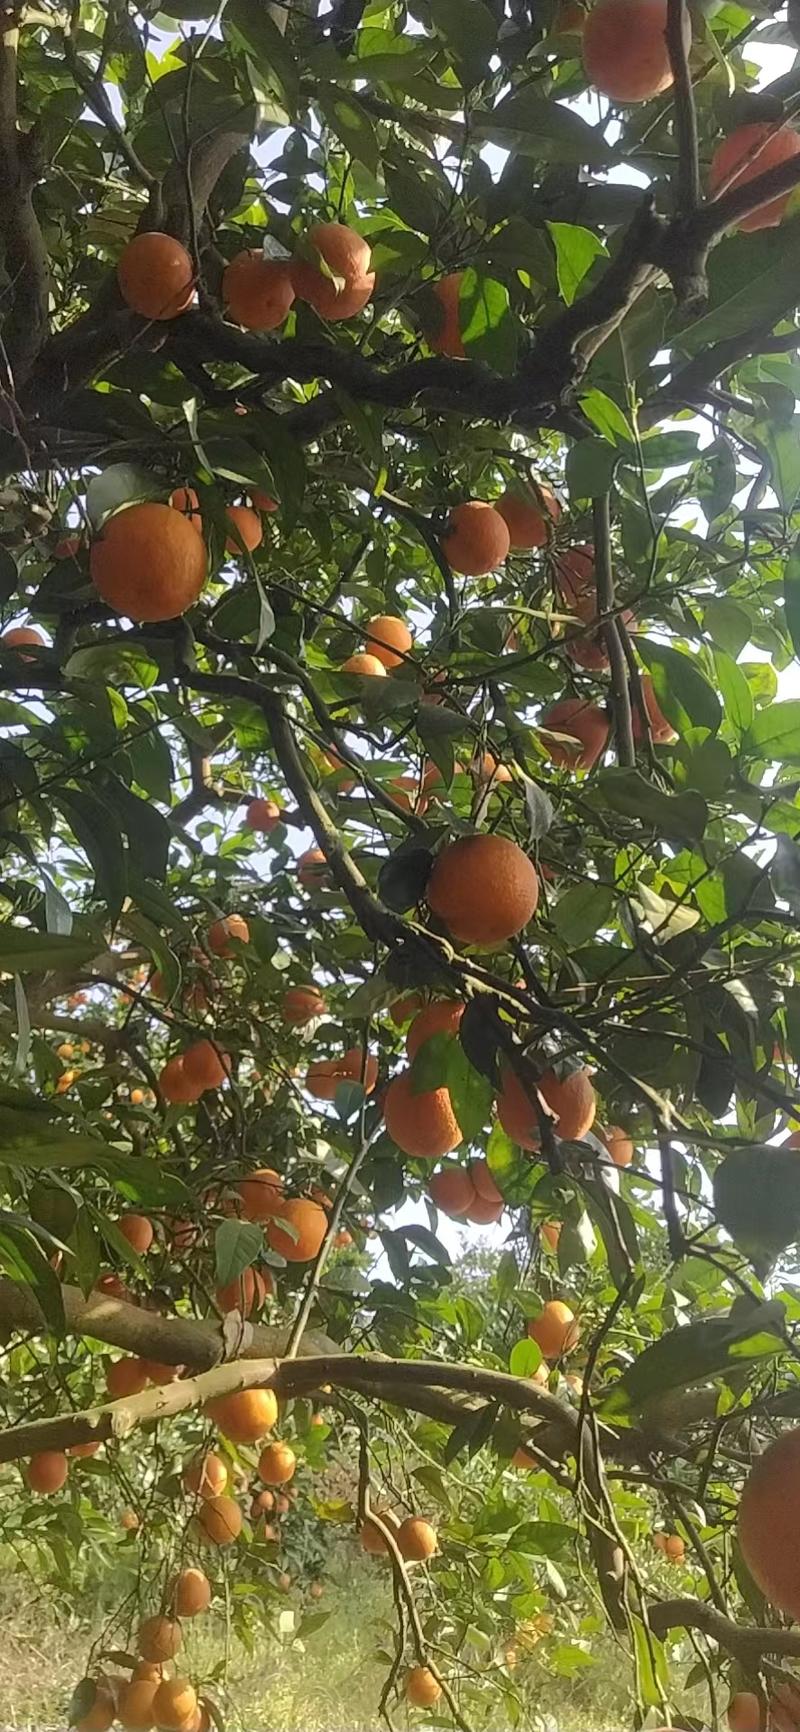 四川橙子脐橙锦橙果园直发现摘现发价格优惠品质保证发货快